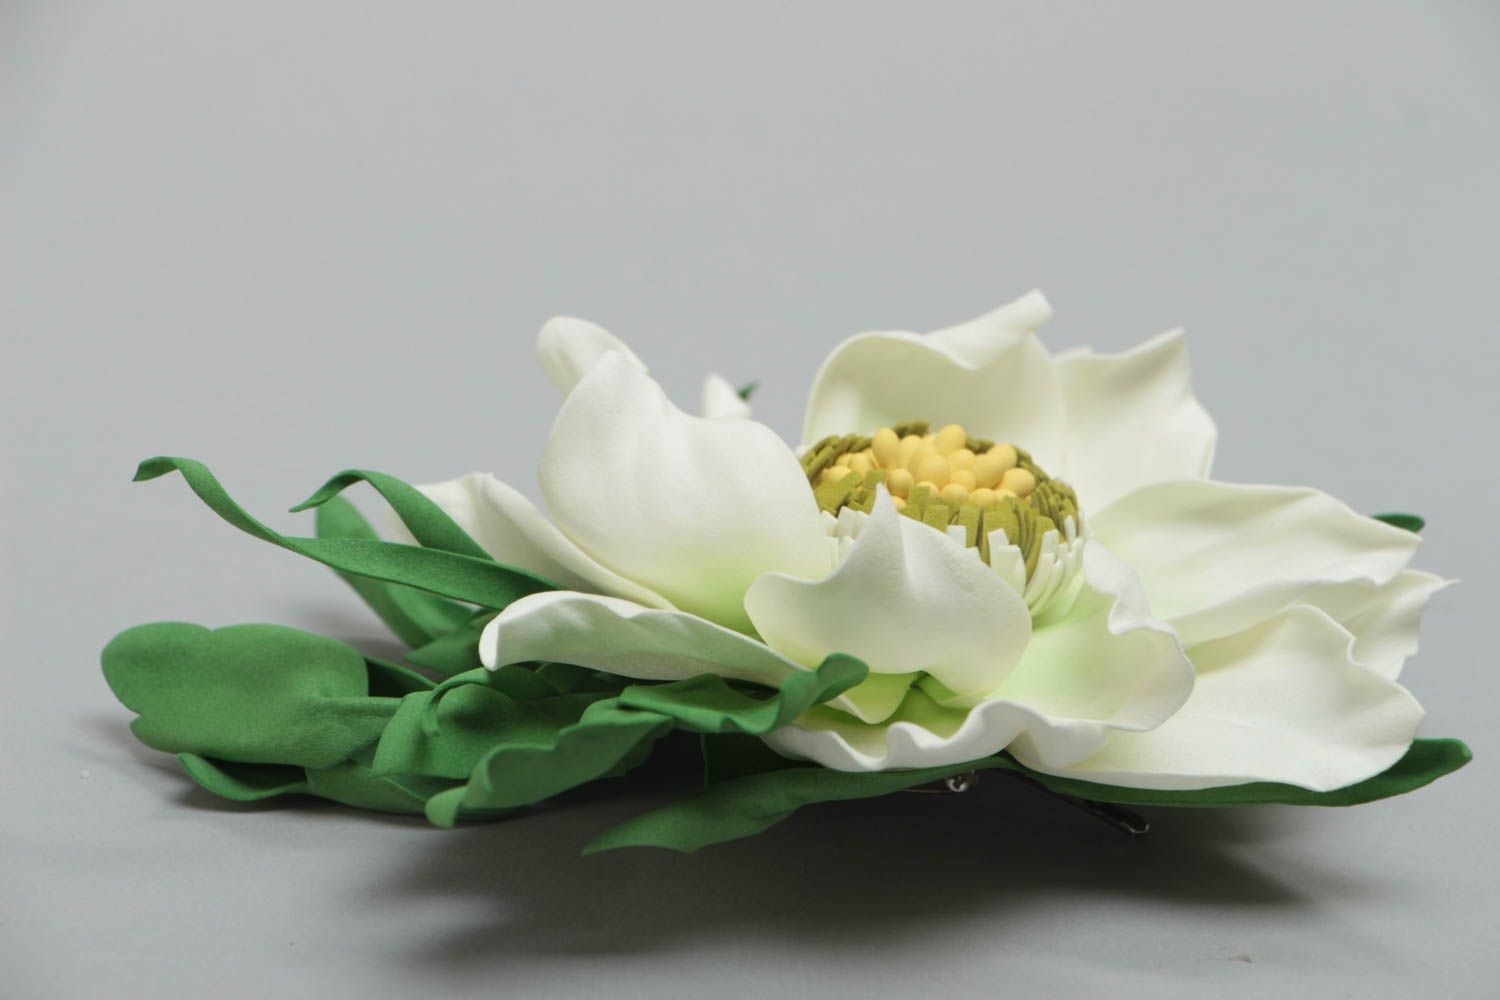 Broche artesanal de foamiran con forma de flor vaporosa de menta foto 3